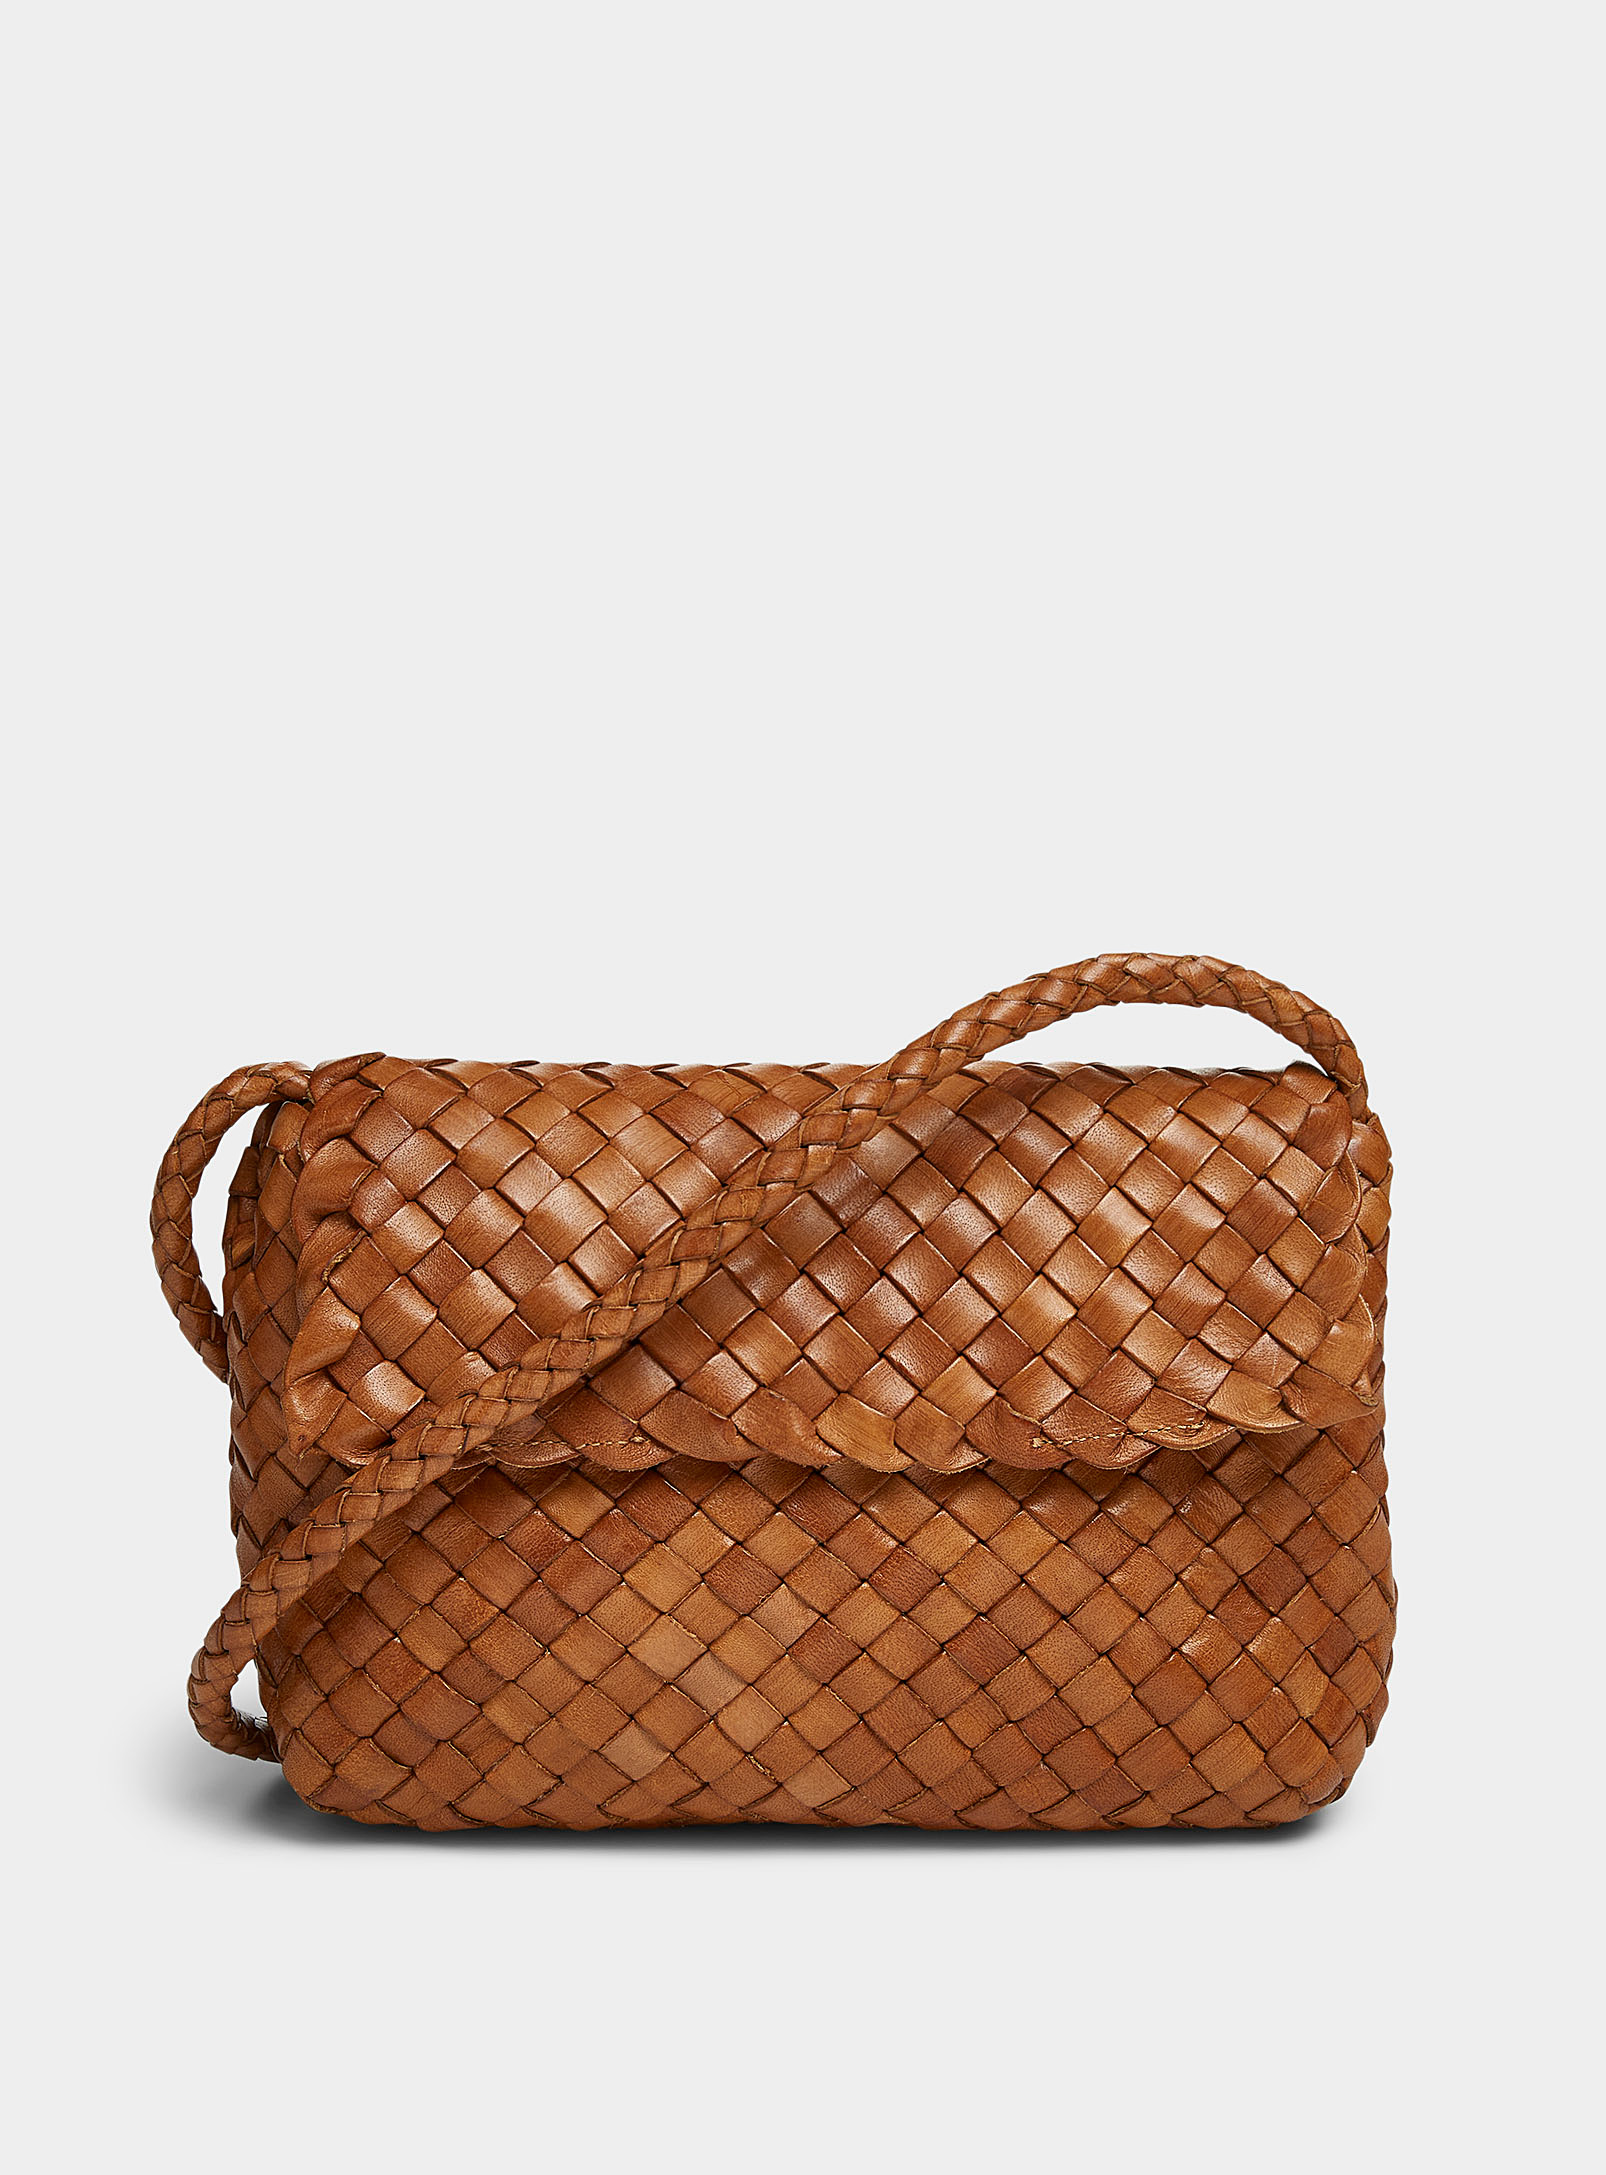 Loeffler Randall - Women's Billie braided leather bag